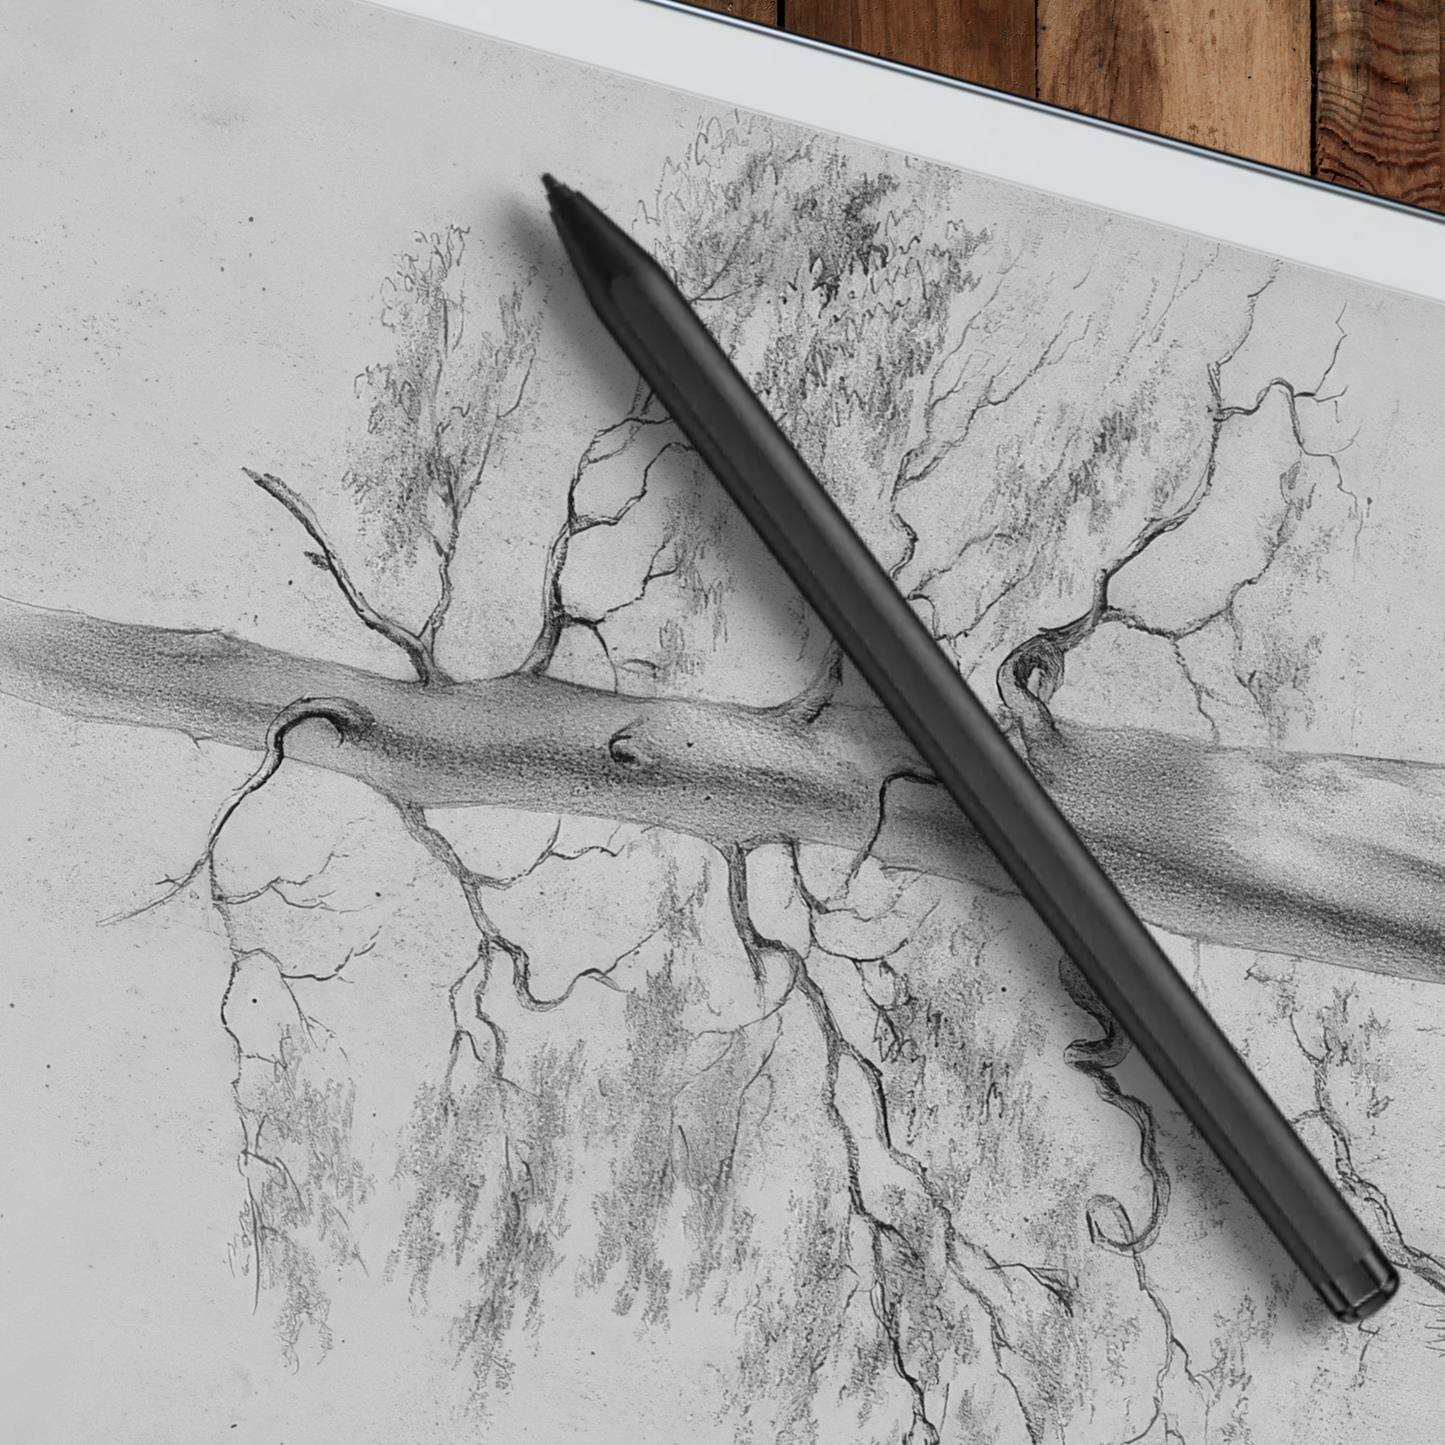 Remarkable 2 Sleep Screen & Notebook Cover Artwork - Original Hand-Rendered Tree Drawings